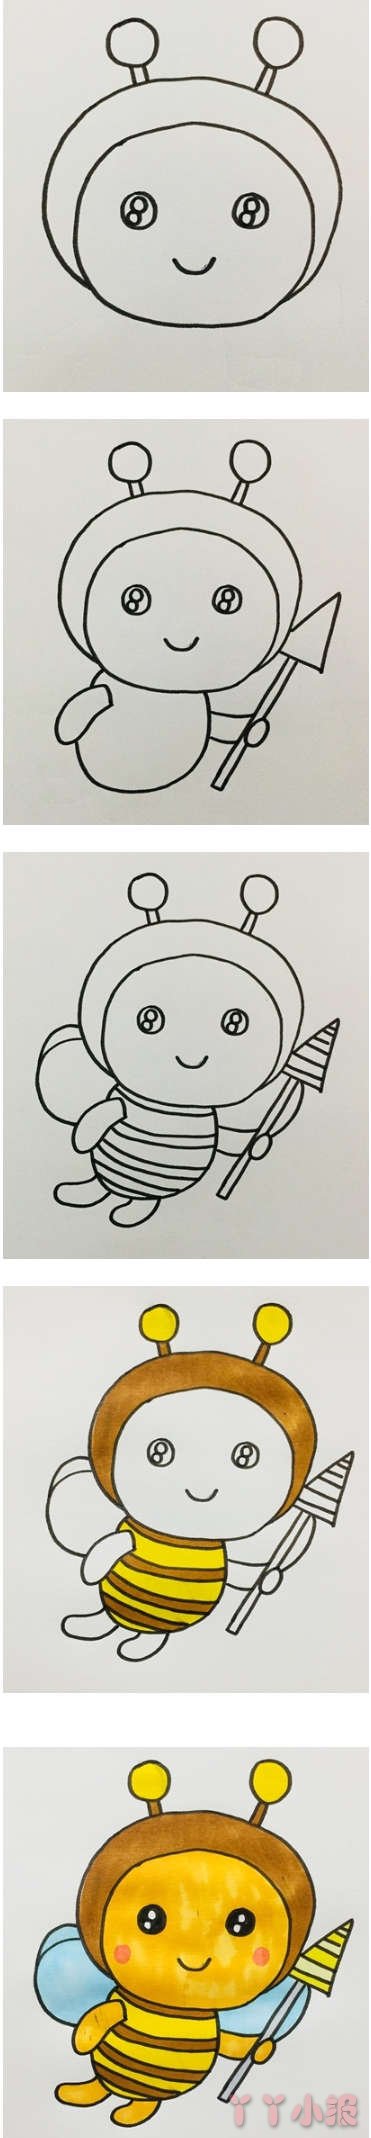 简笔画卡通小蜜蜂的画法步骤教程涂色简单